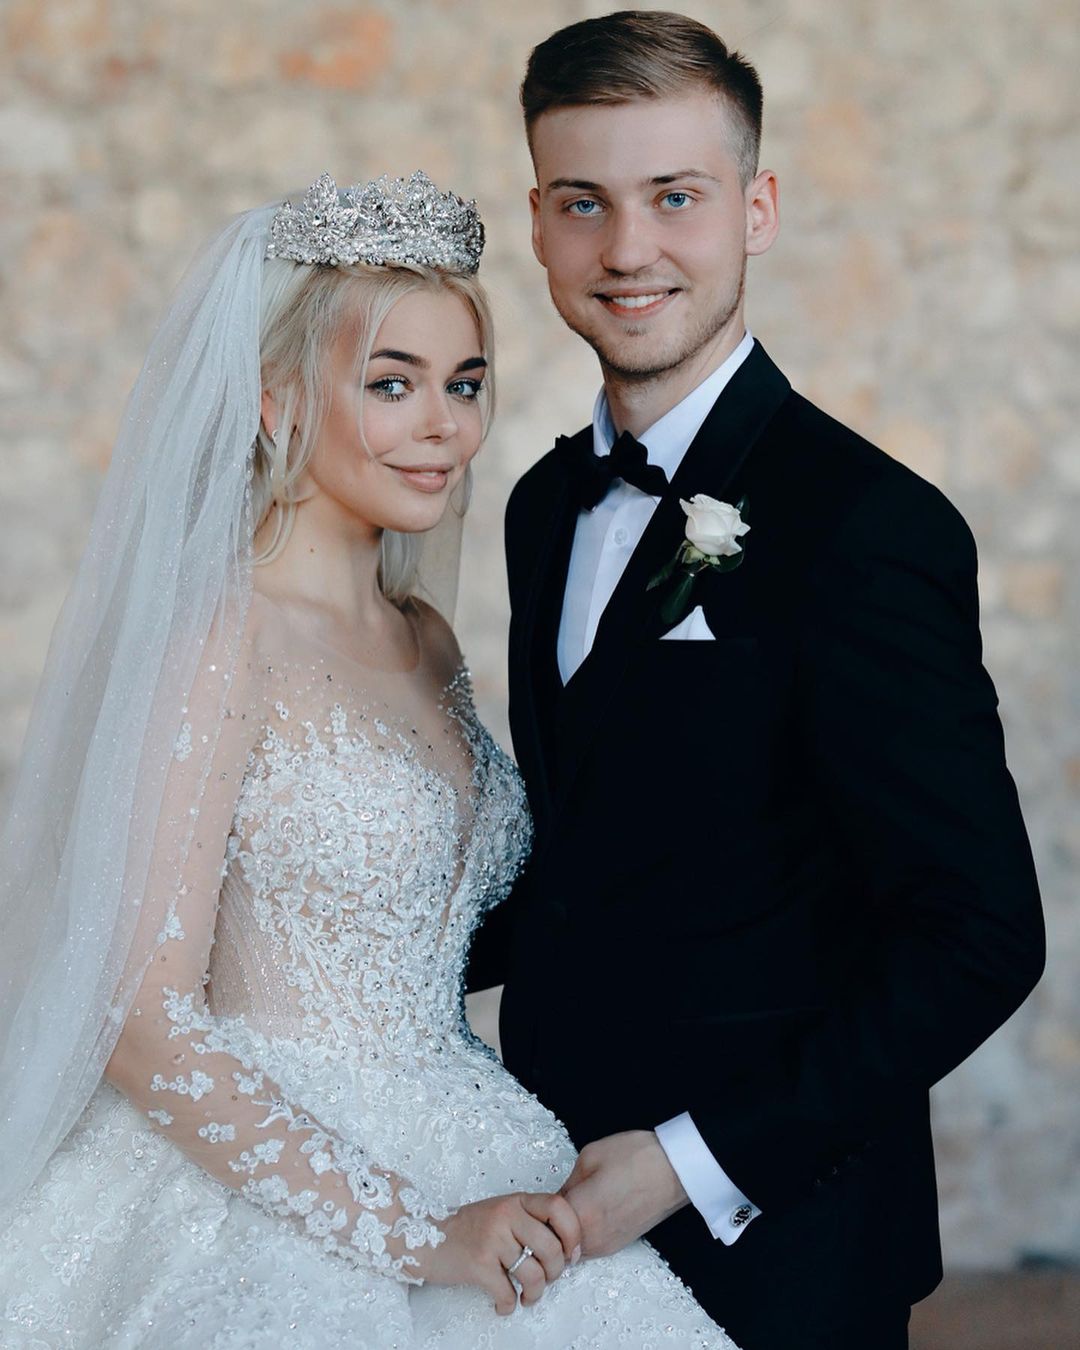 Алина Гросу свадьба свадебное платье пышное белое украинские звезды в чем выходят замуж